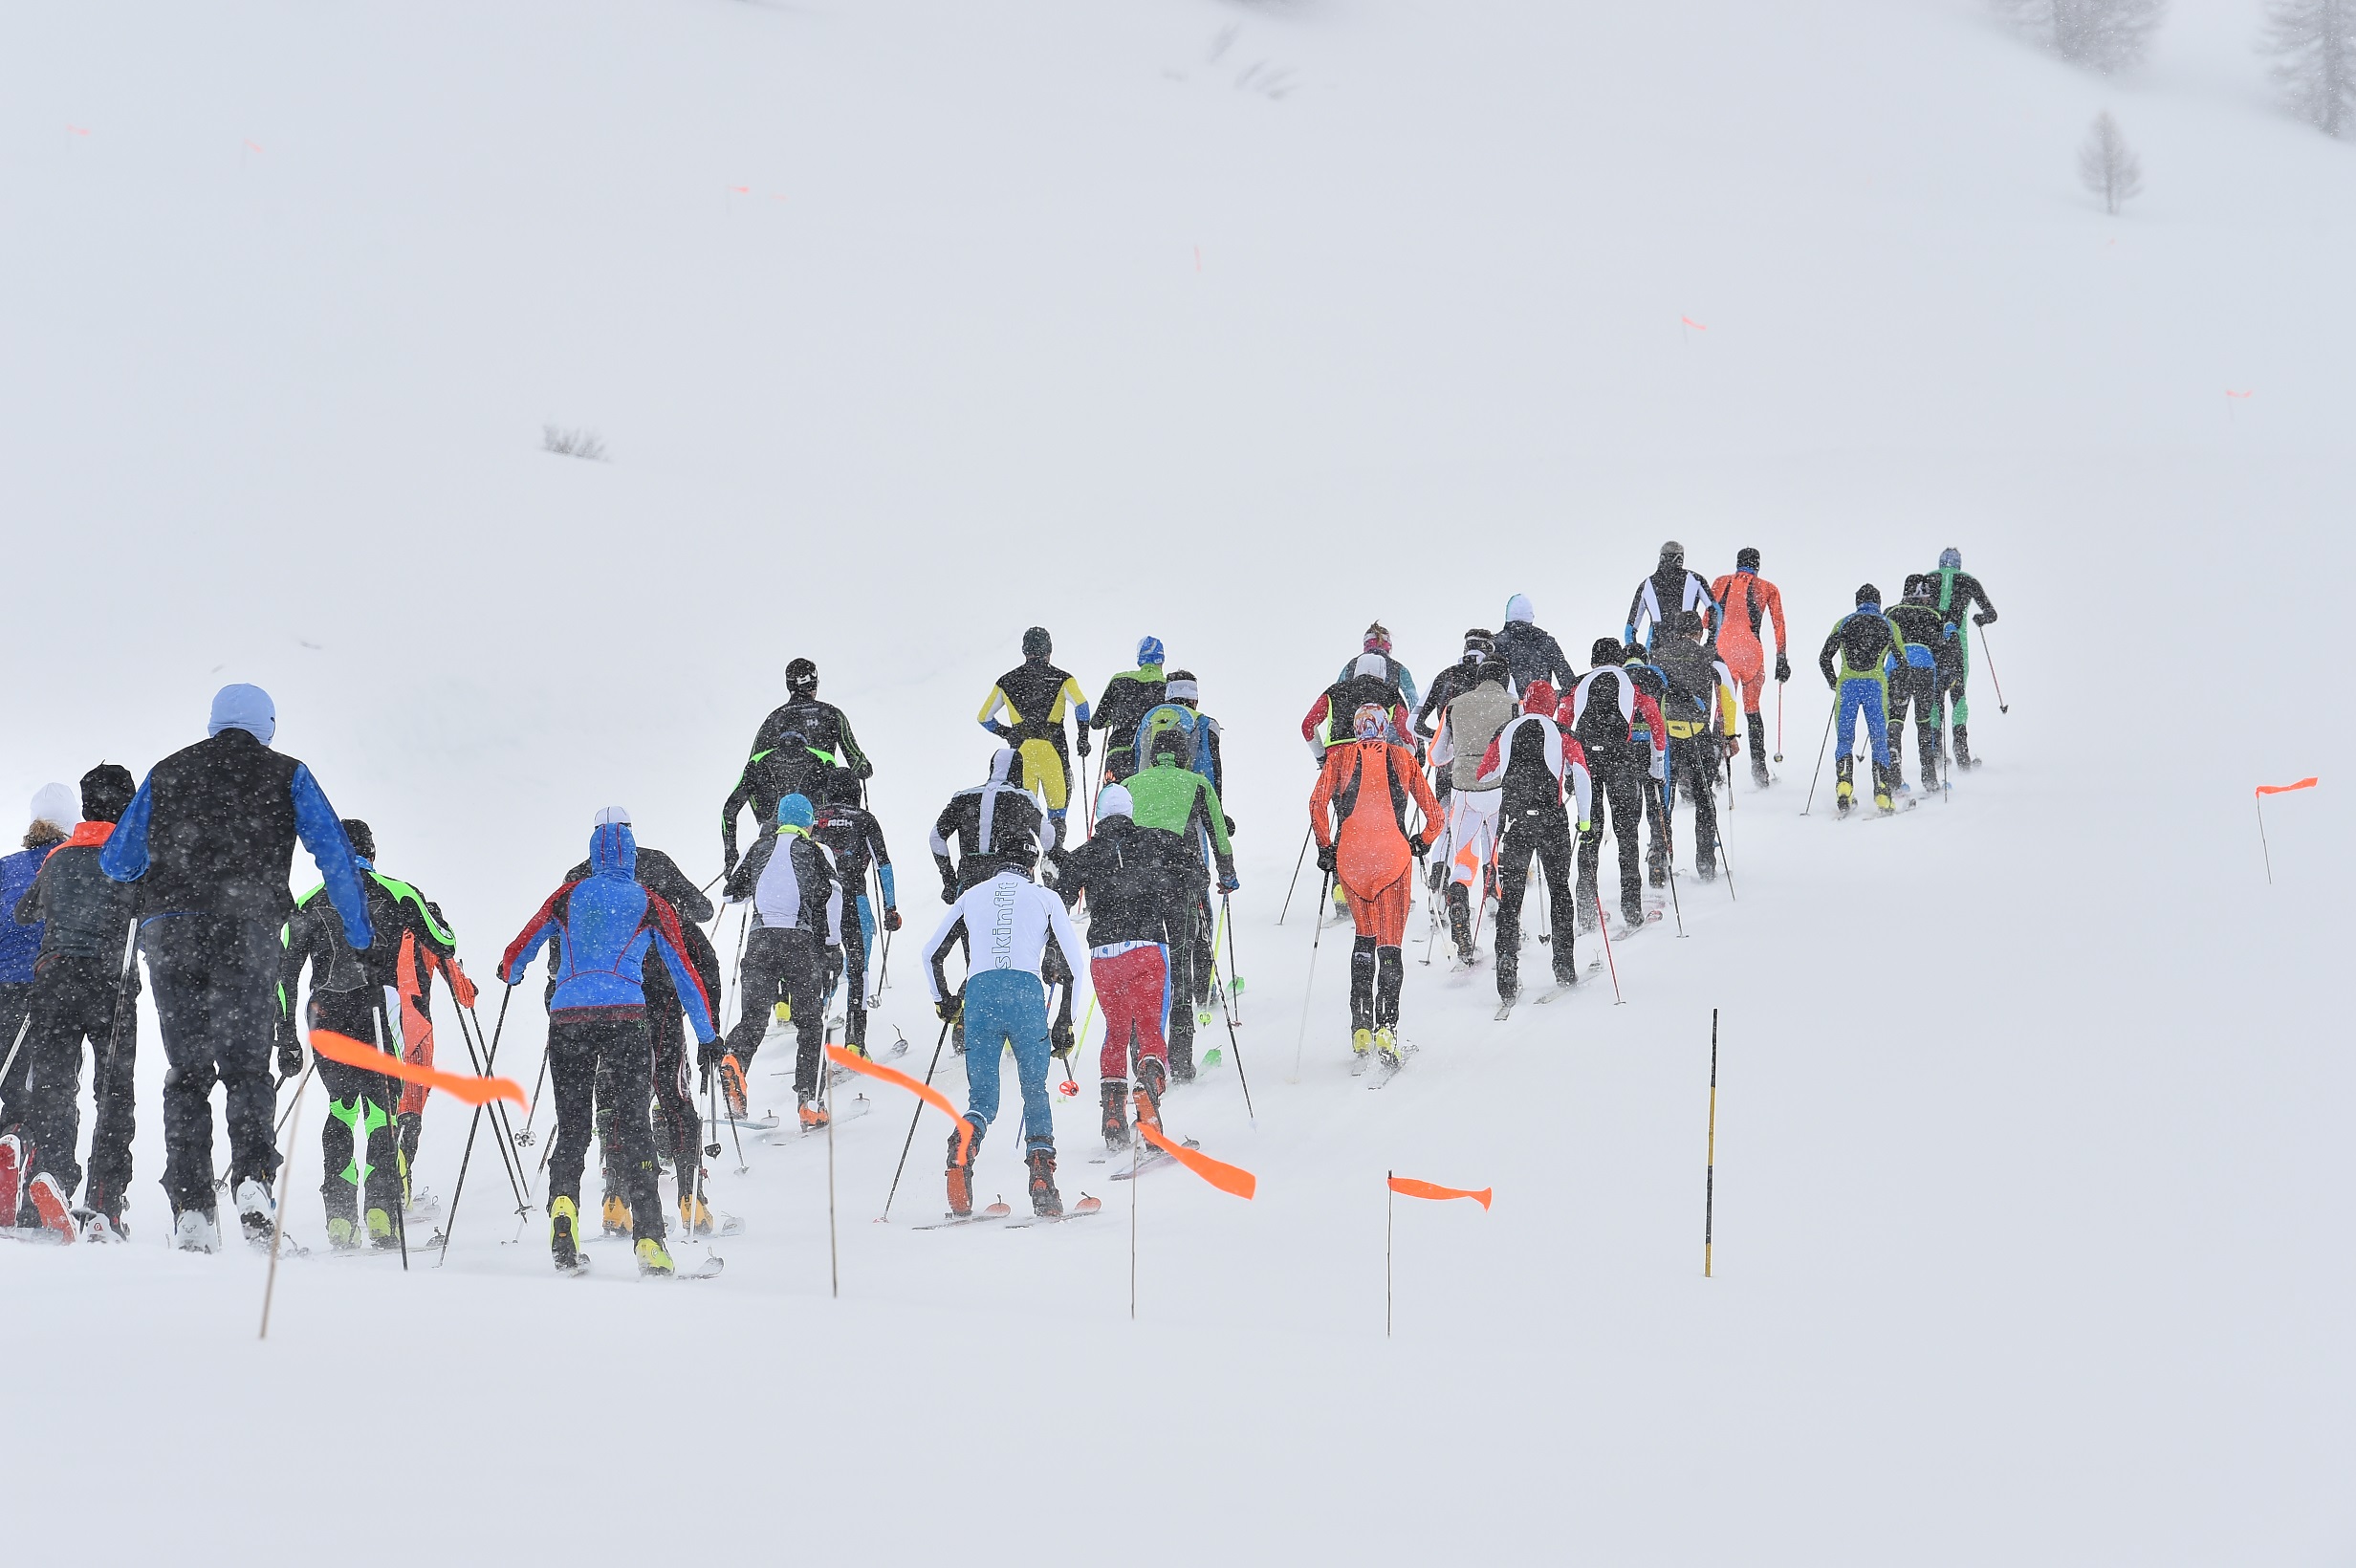 3-summits Lagalb, Skitourenrennen, Pontresina, 777 HM, 4.7 Km